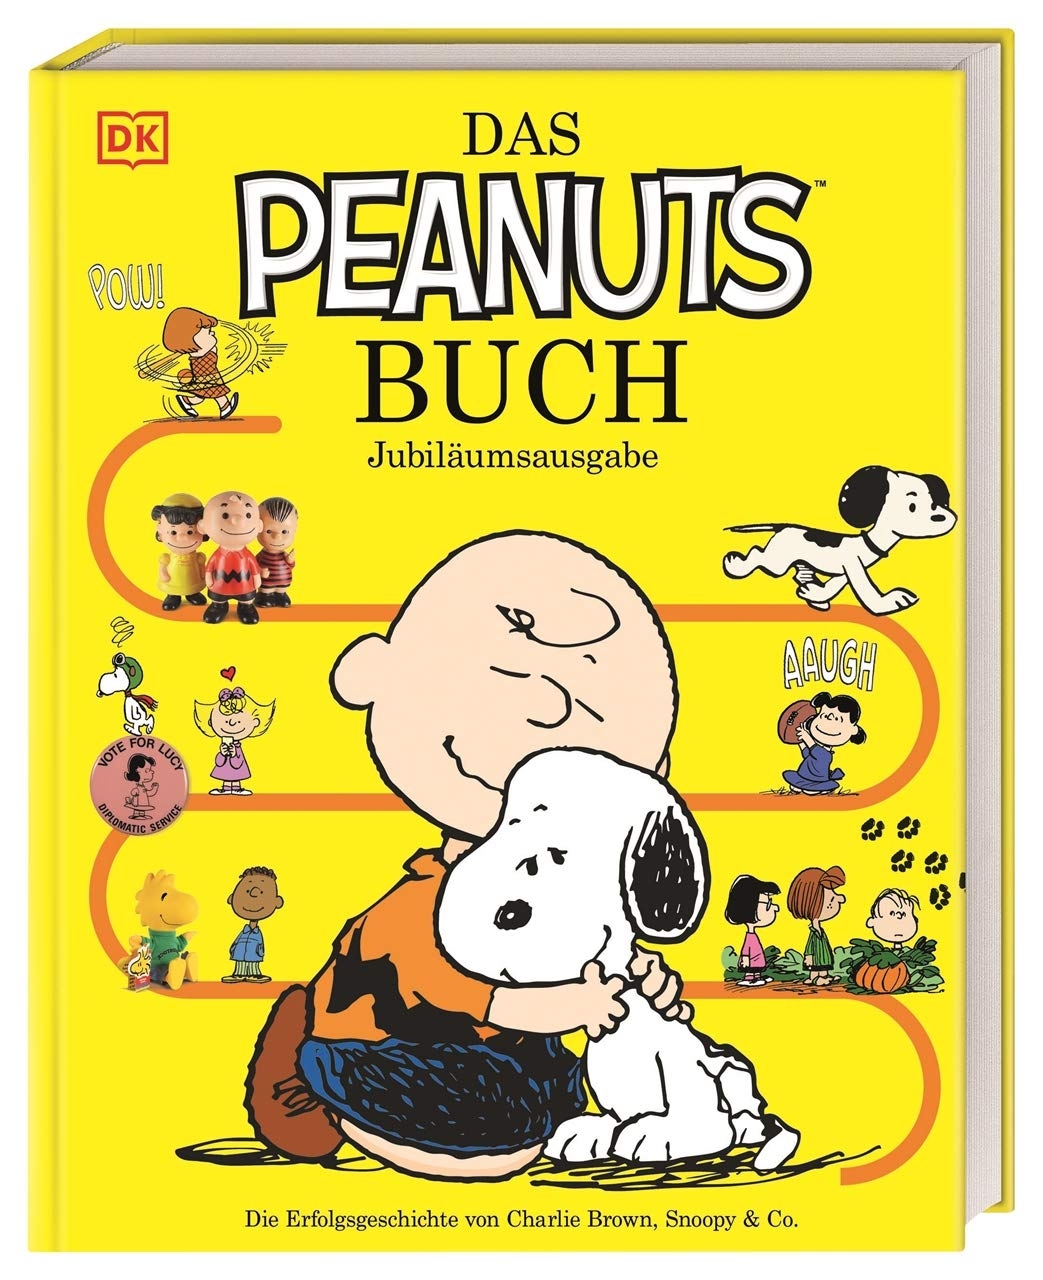 comics 04 21 PeanutsBuch